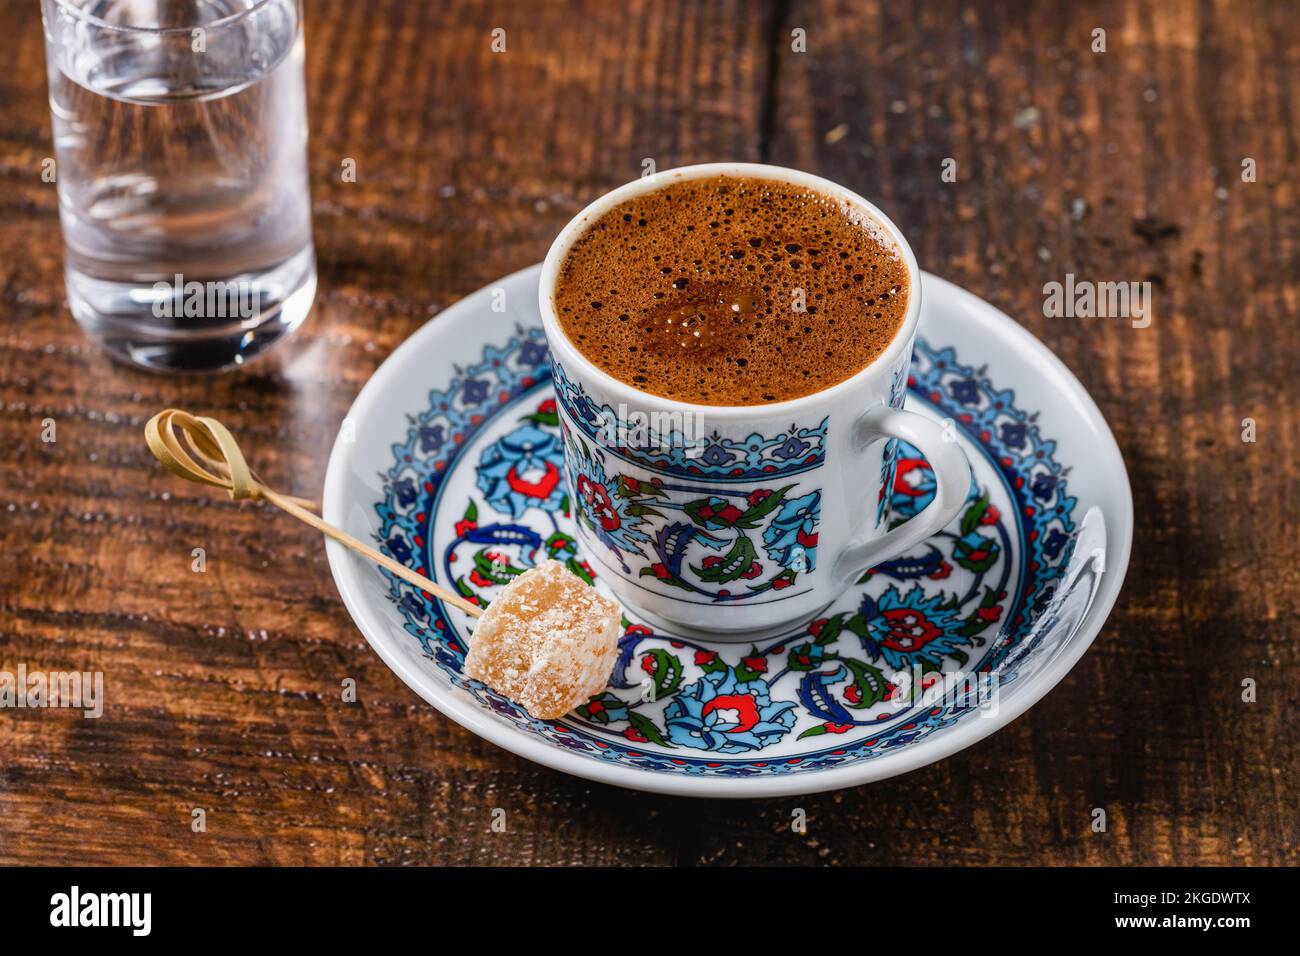 Café turc dans une tasse de café classique avec eau et délice turc sur une table en bois Banque D'Images